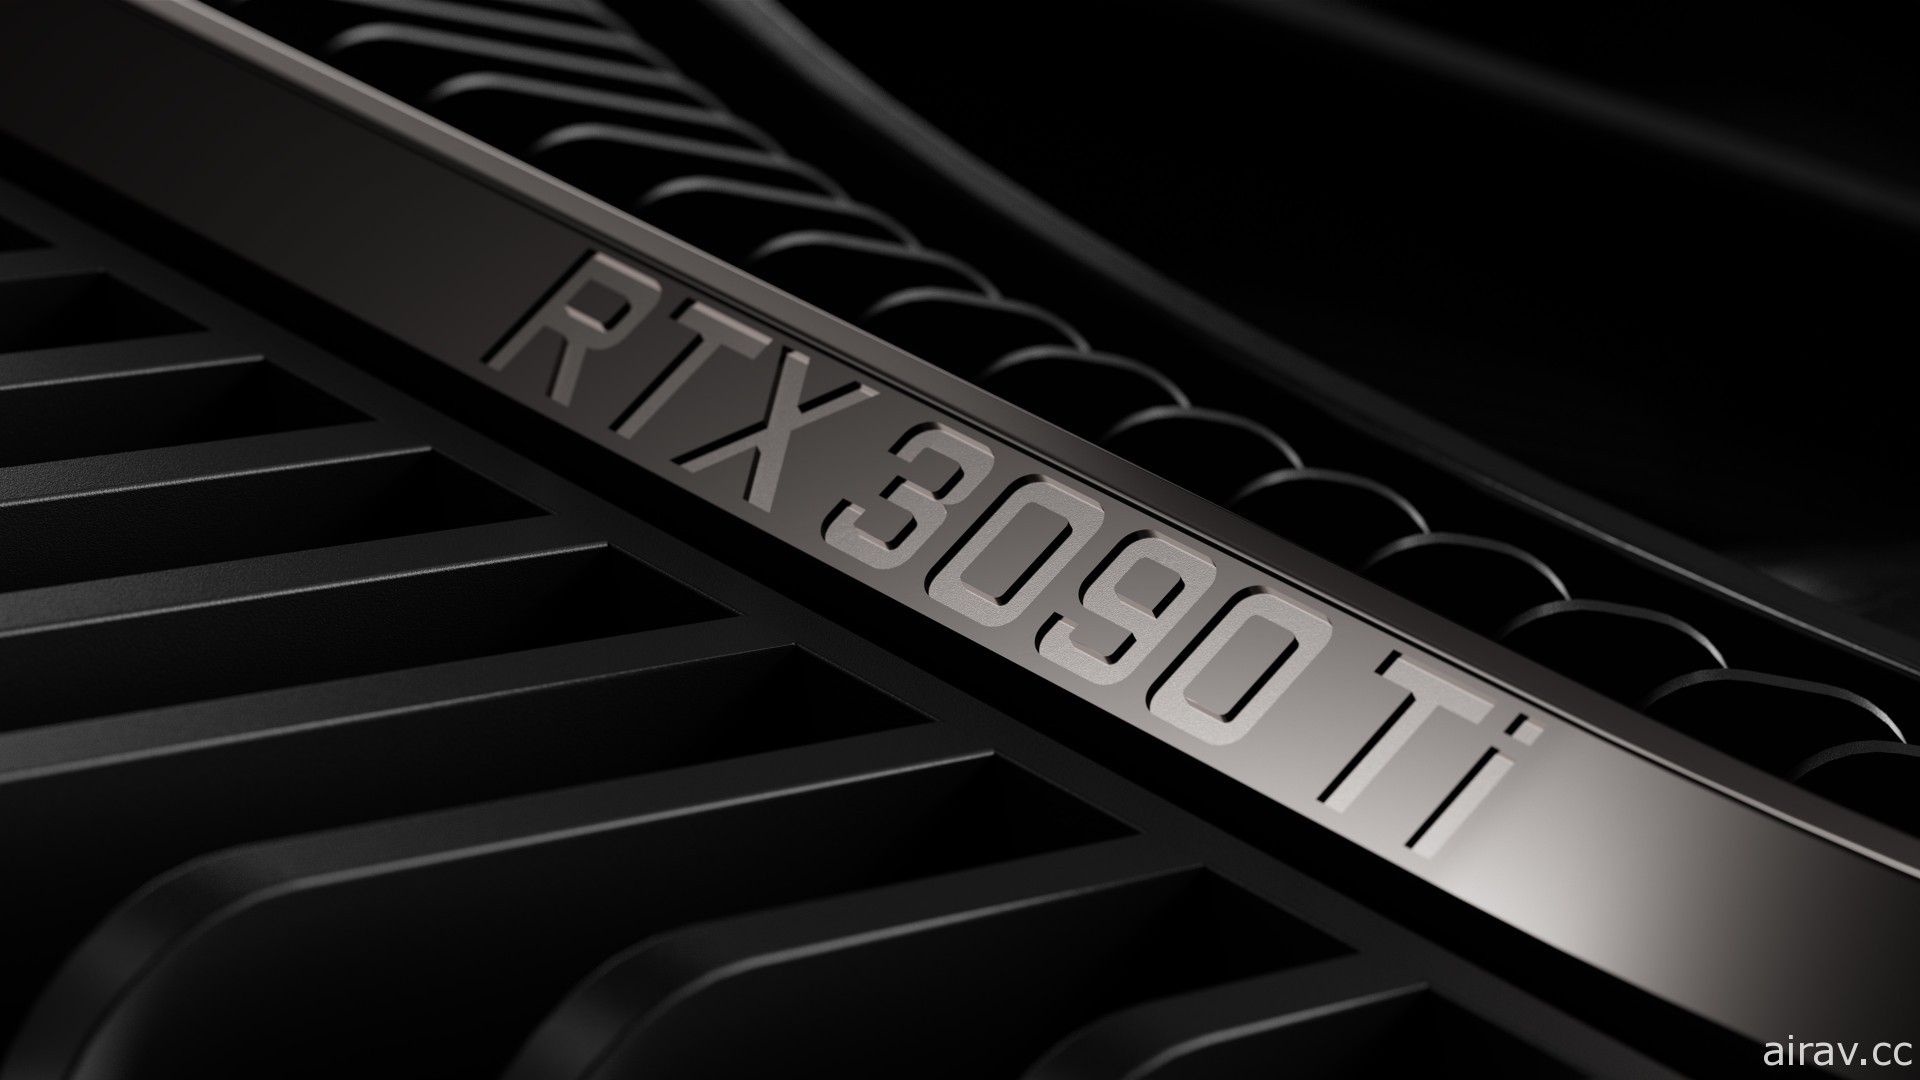 NVIDIA 推出 RTX 30 頂級顯卡「GeForce RTX 3090 Ti」 瞄準追求頂尖效能的創作者和玩家